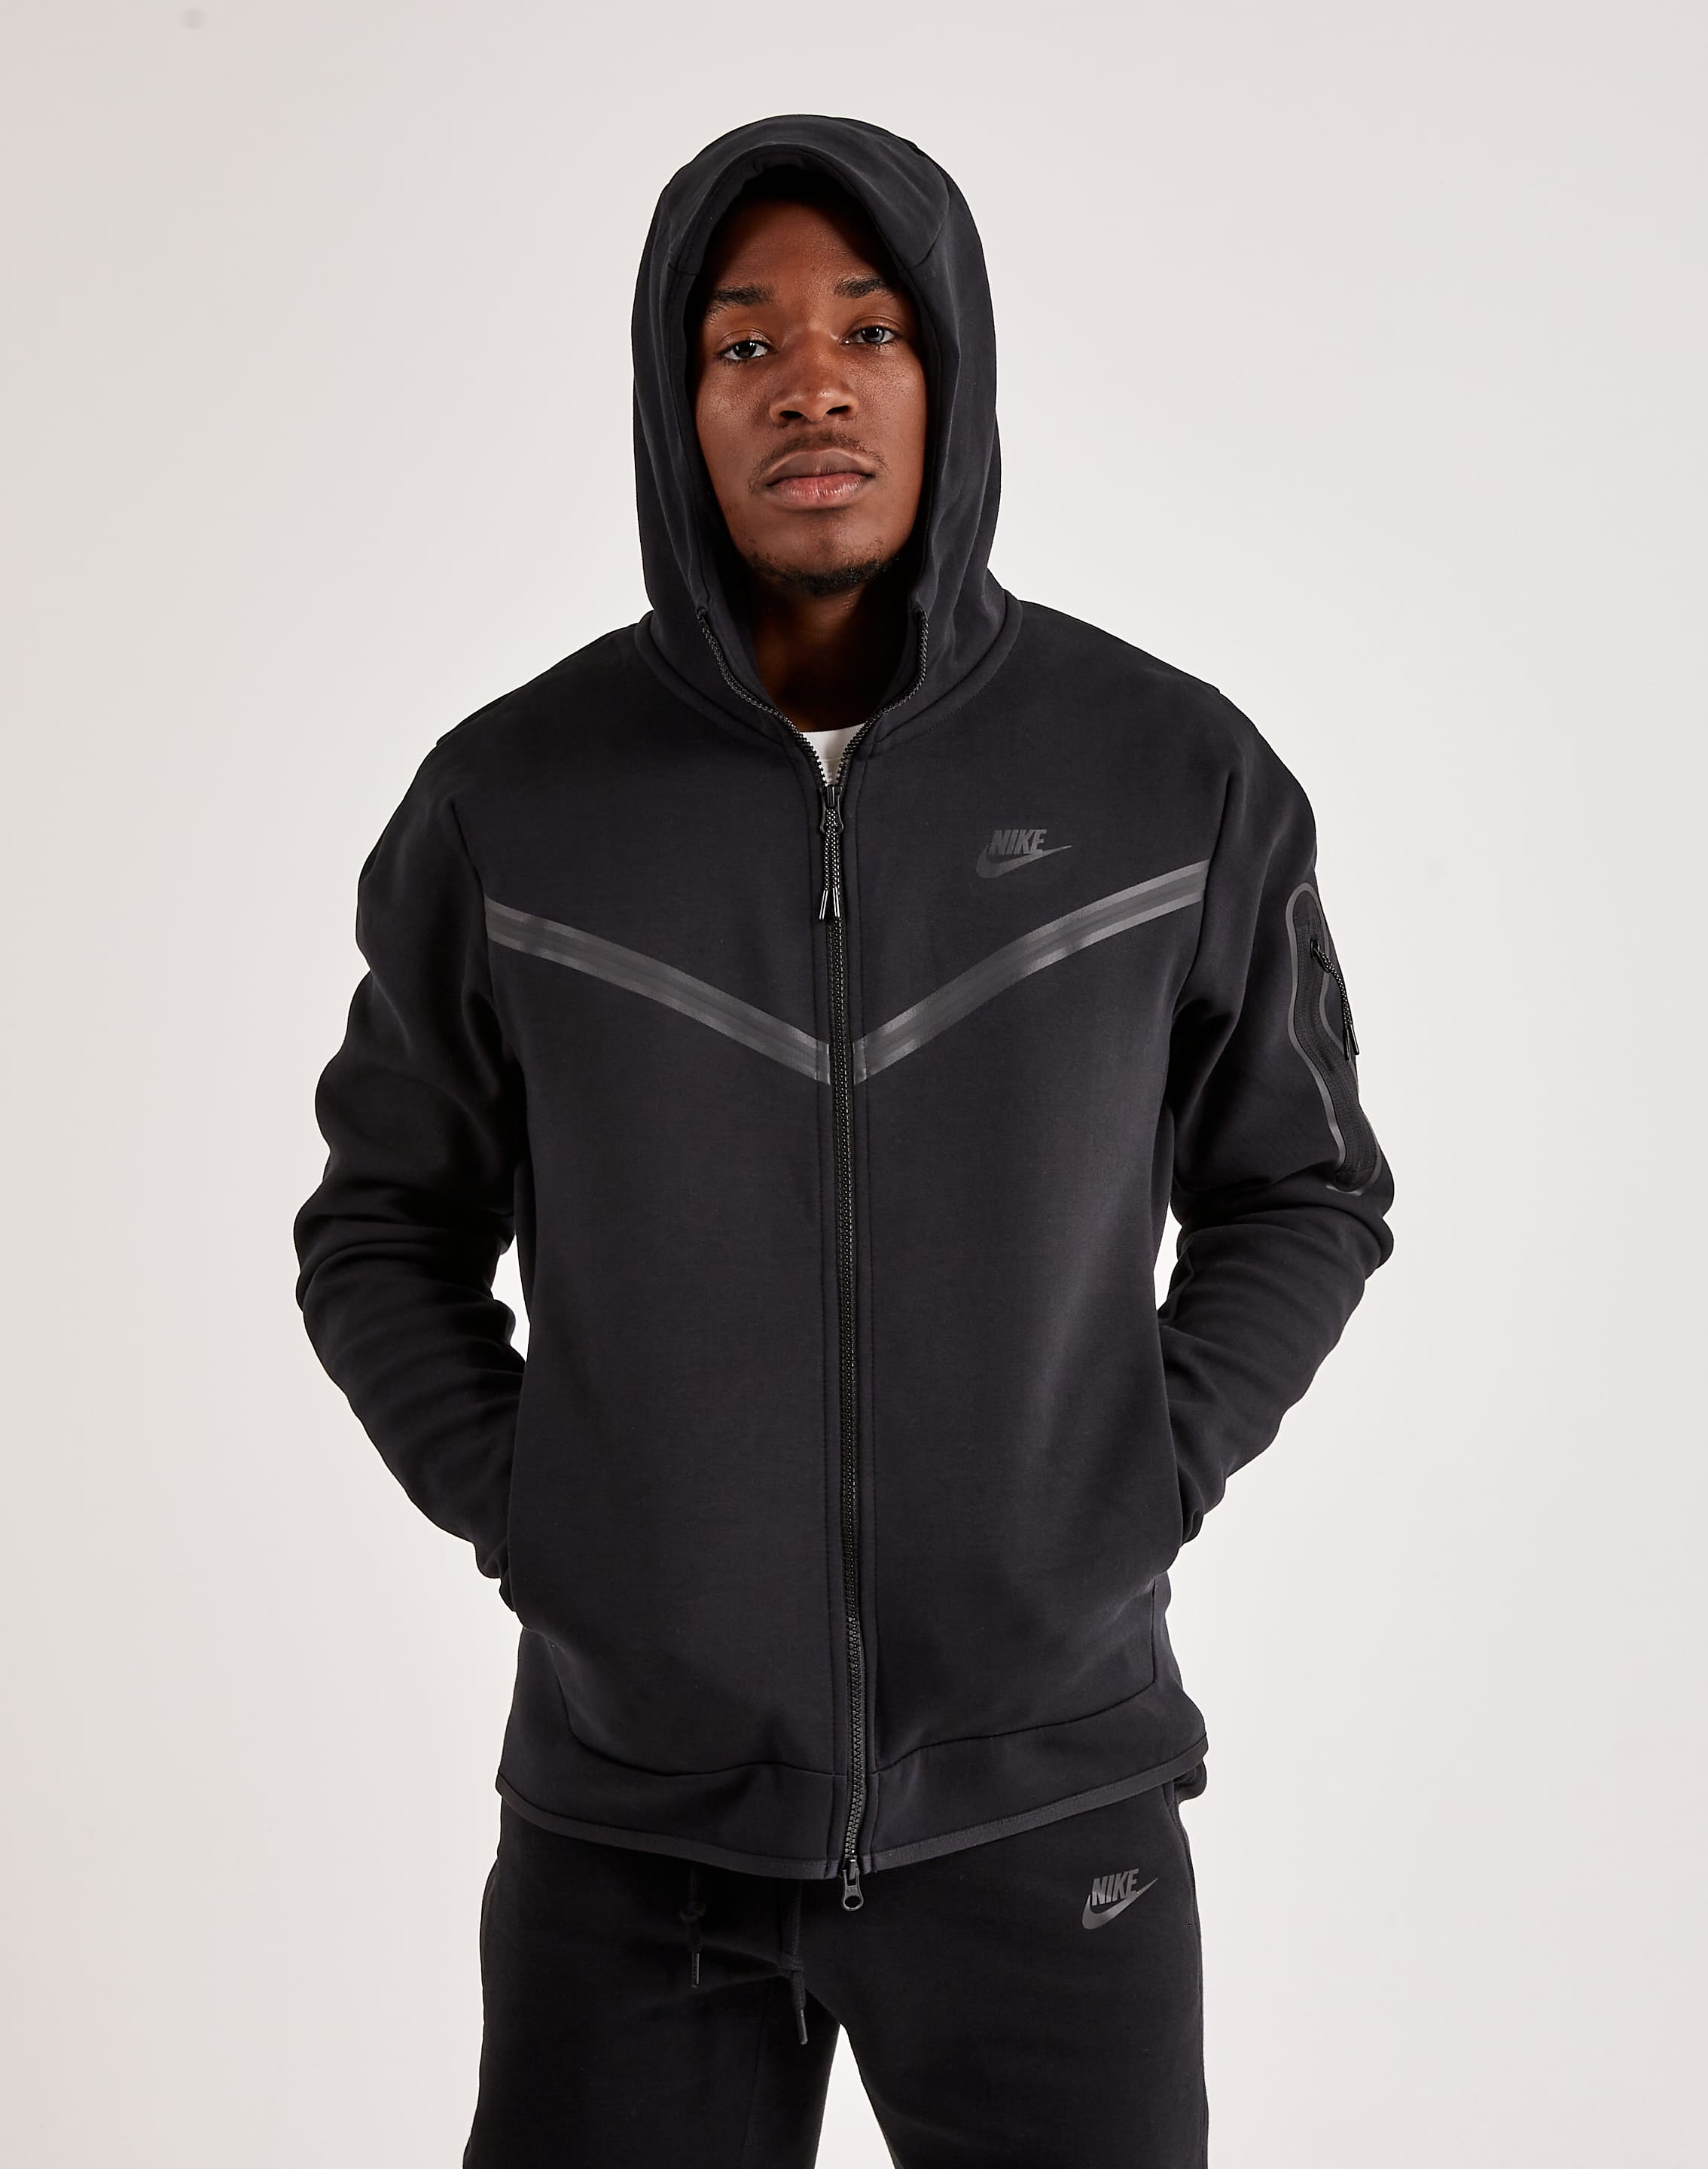 Nike Sportswear Tech Fleece Full-Zip Hoodie Light Blue/White/Grey Men's - US